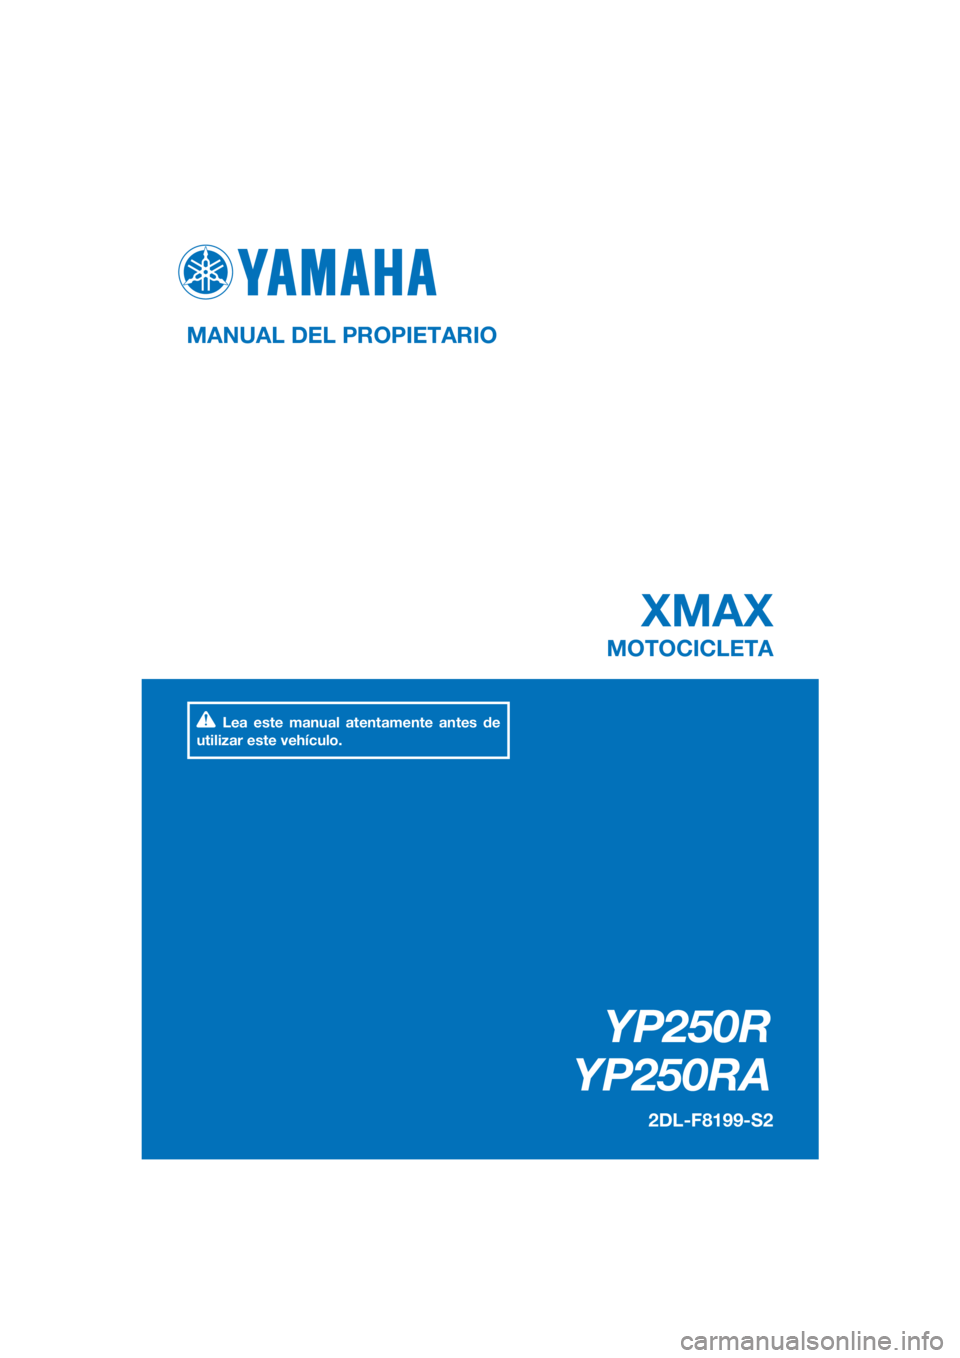 YAMAHA XMAX 250 2016  Manuale de Empleo (in Spanish) PANTONE285C
YP250R
YP250RA
XMAX
MANUAL DEL PROPIETARIO
2DL-F8199-S2
MOTOCICLETA
Lea este manual atentamente antes de 
utilizar este vehículo.
[Spanish  (S)] 